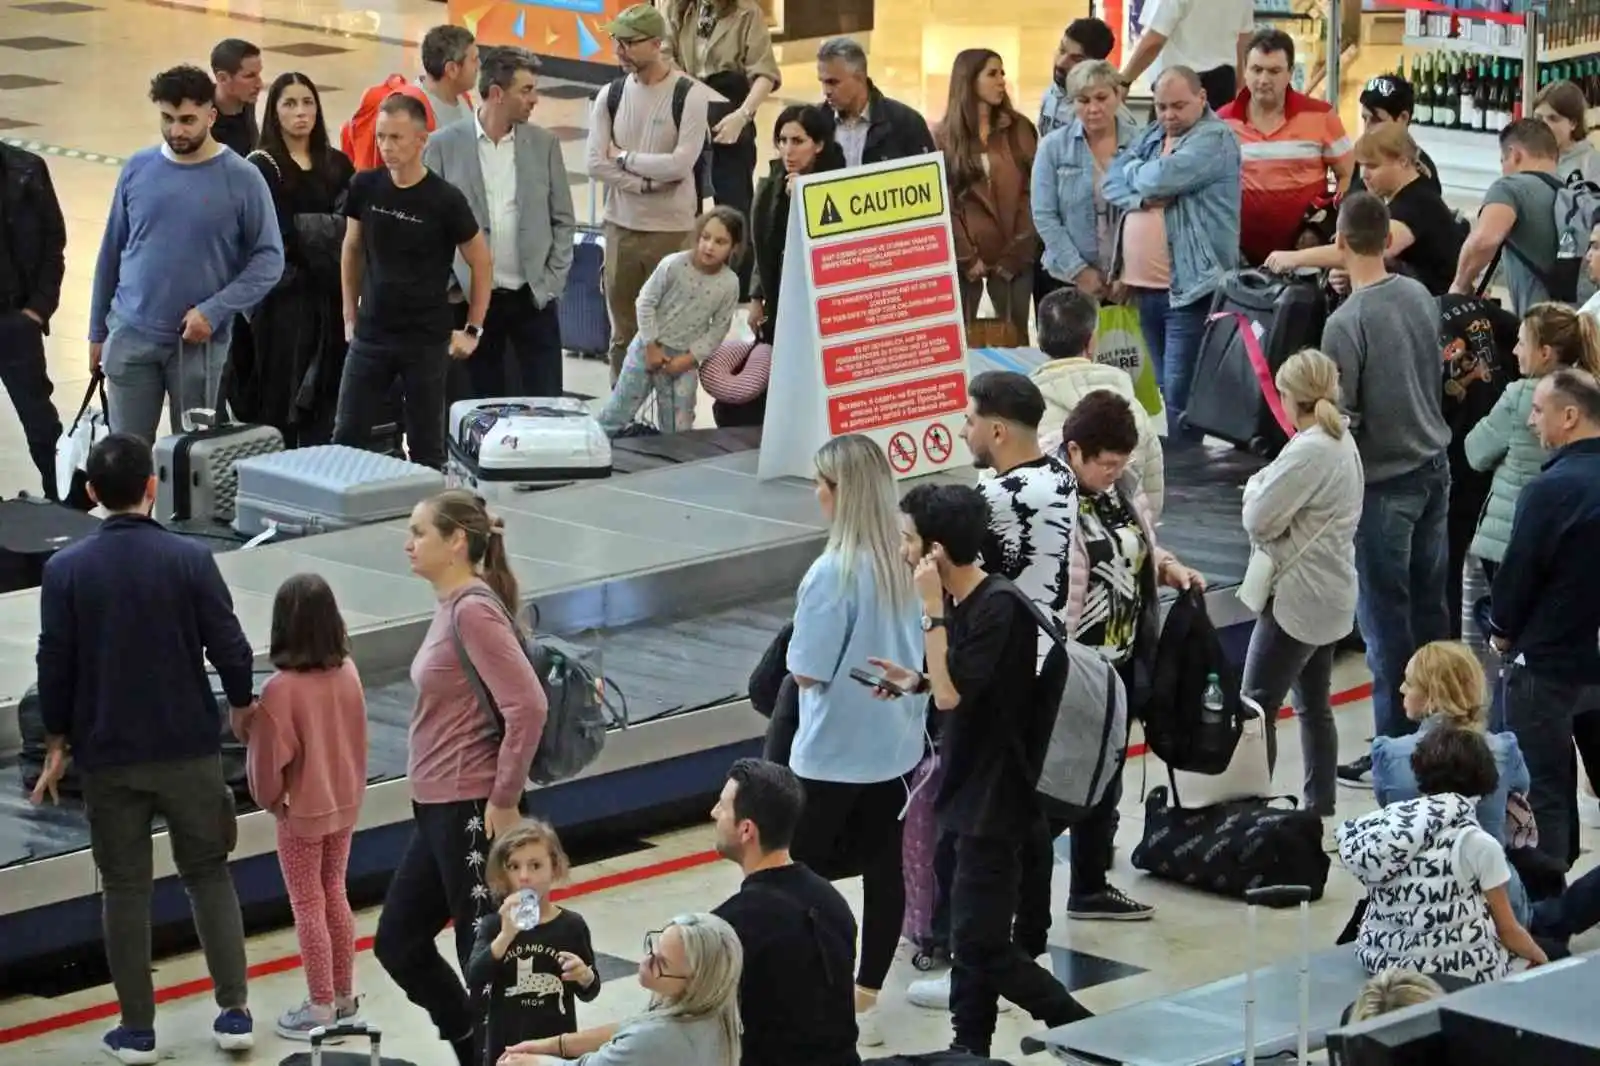 Seferberlik sonrası Rusya’dan Antalya’ya gelen günlük 80 uçağa 3-4 sefer ilave edilmiş durumda
